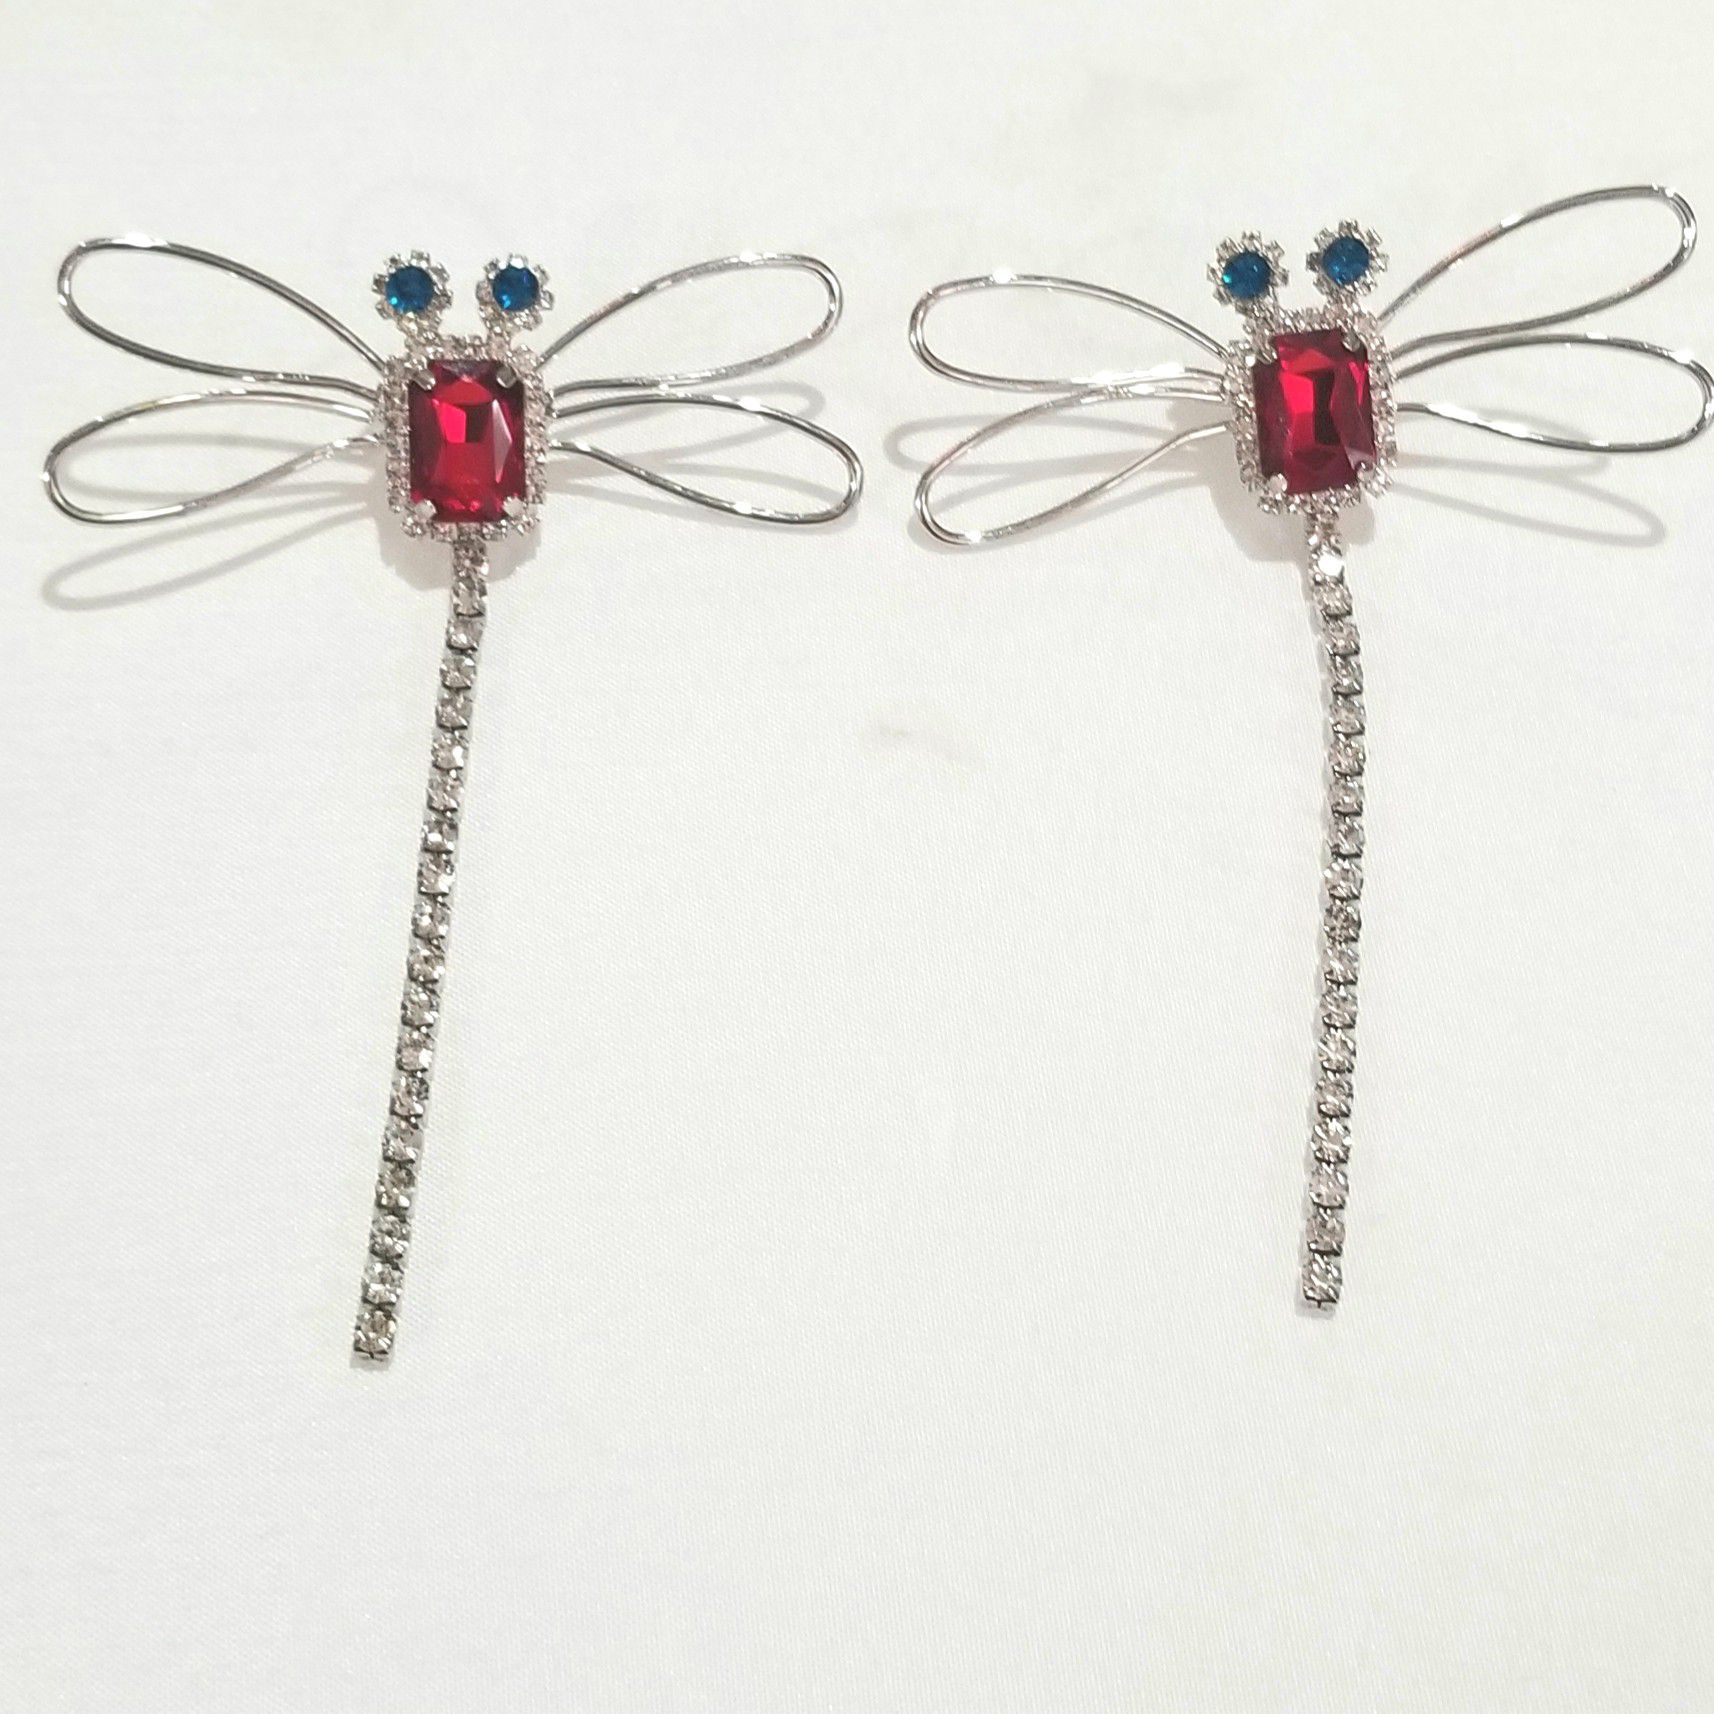 CZ diamond dragonfly earrings dangle